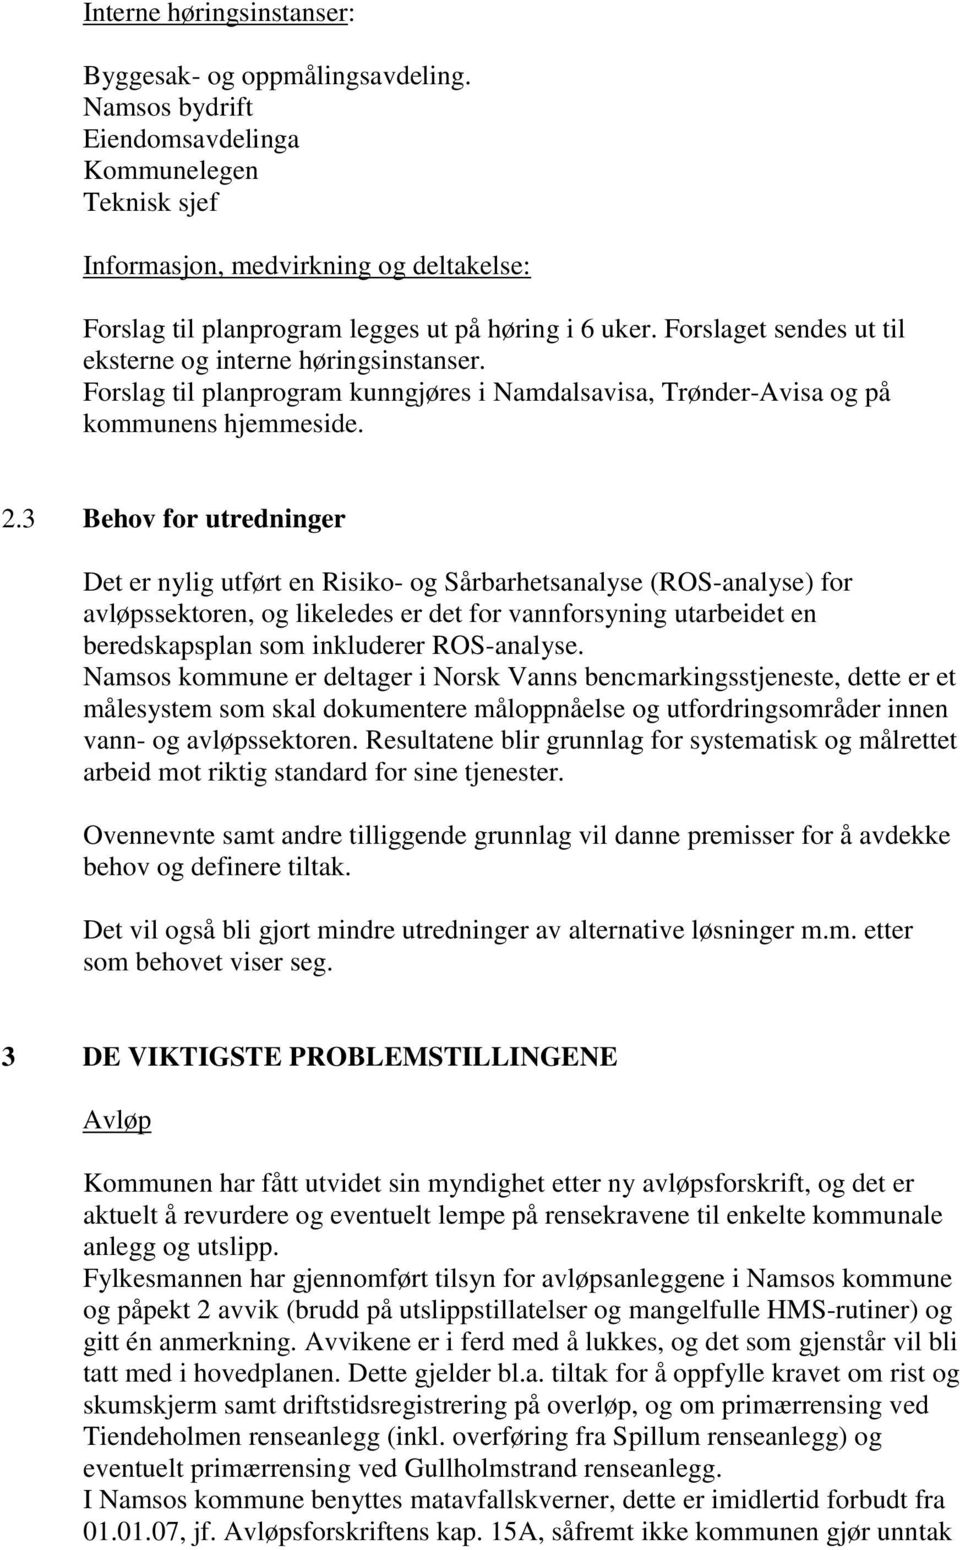 Forslaget sendes ut til eksterne og interne høringsinstanser. Forslag til planprogram kunngjøres i Namdalsavisa, Trønder-Avisa og på kommunens hjemmeside. 2.